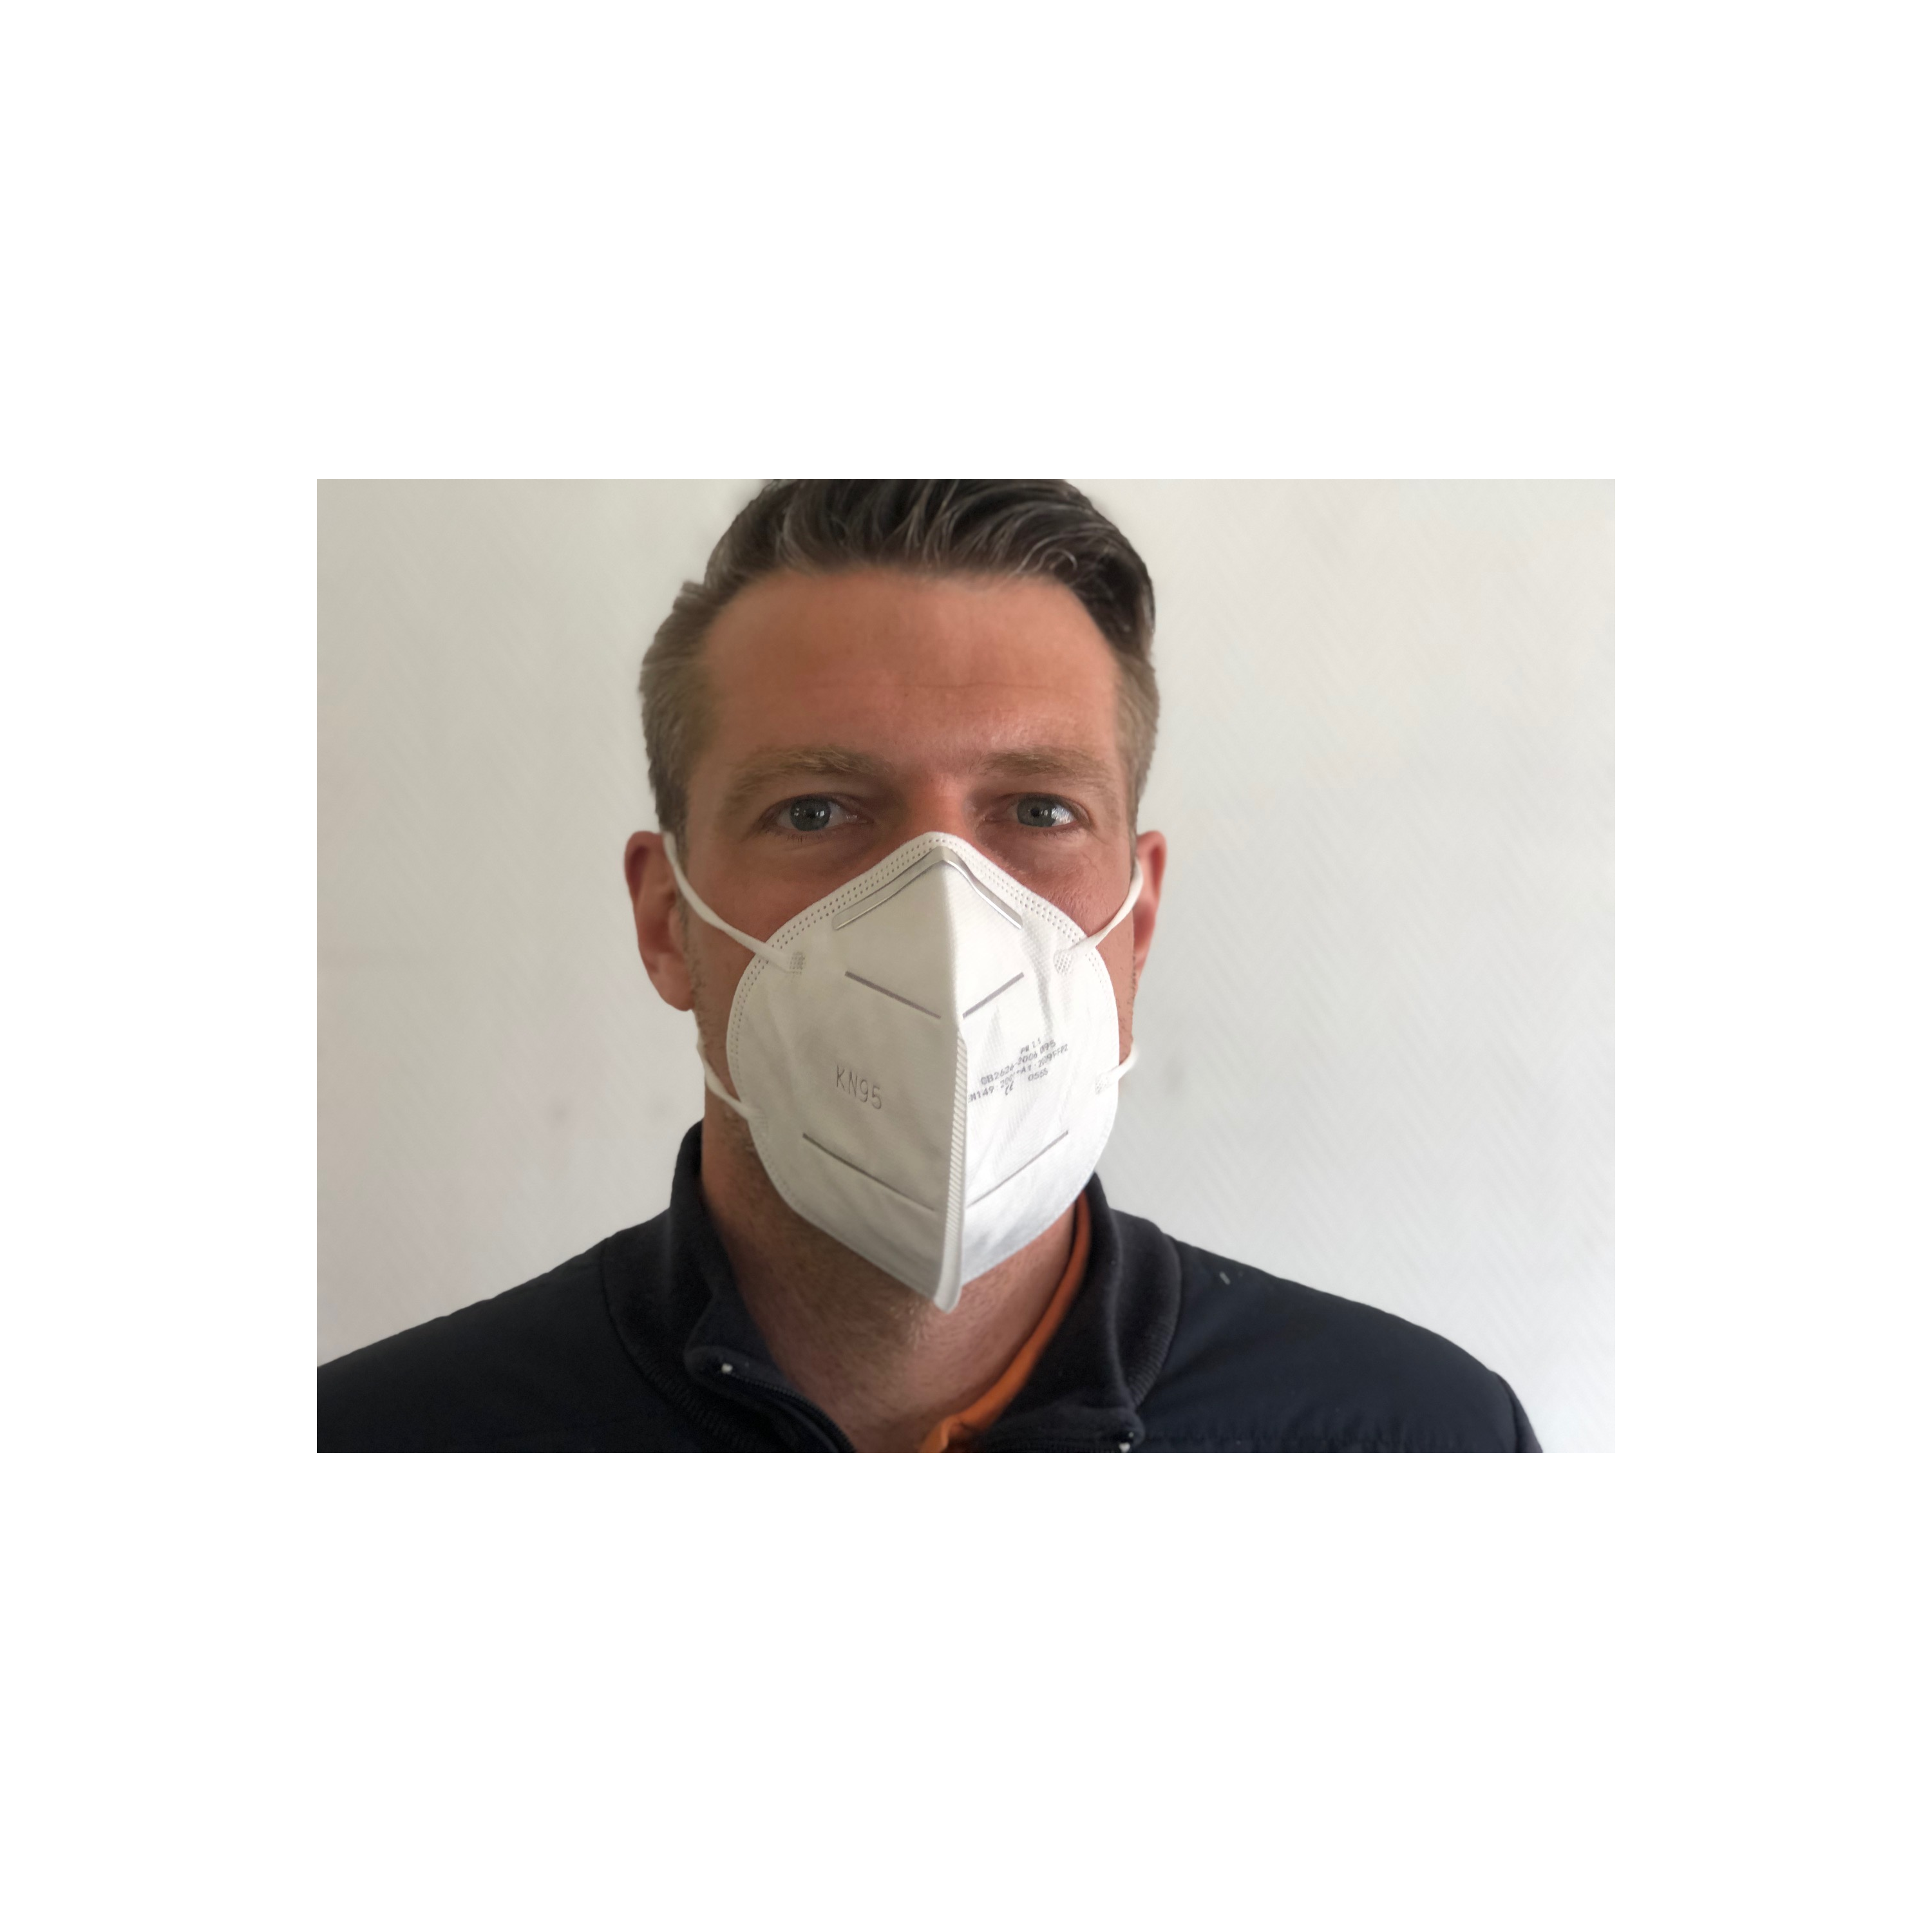 FFP2 - Masque de protection contre la COVID-19 Blanc (10 unités par boîte)